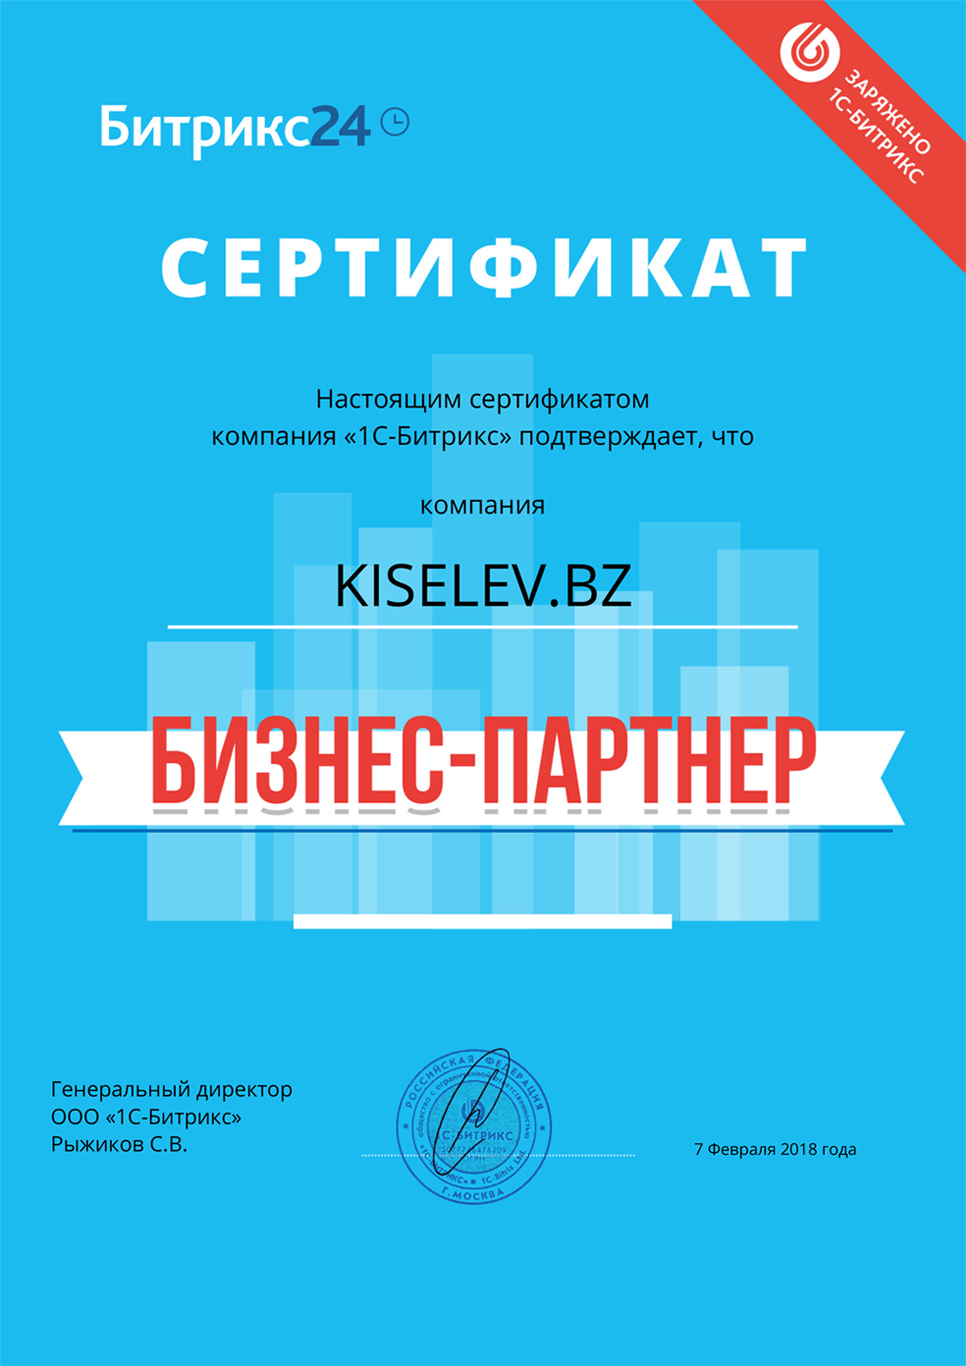 Сертификат партнёра по АМОСРМ в Советском